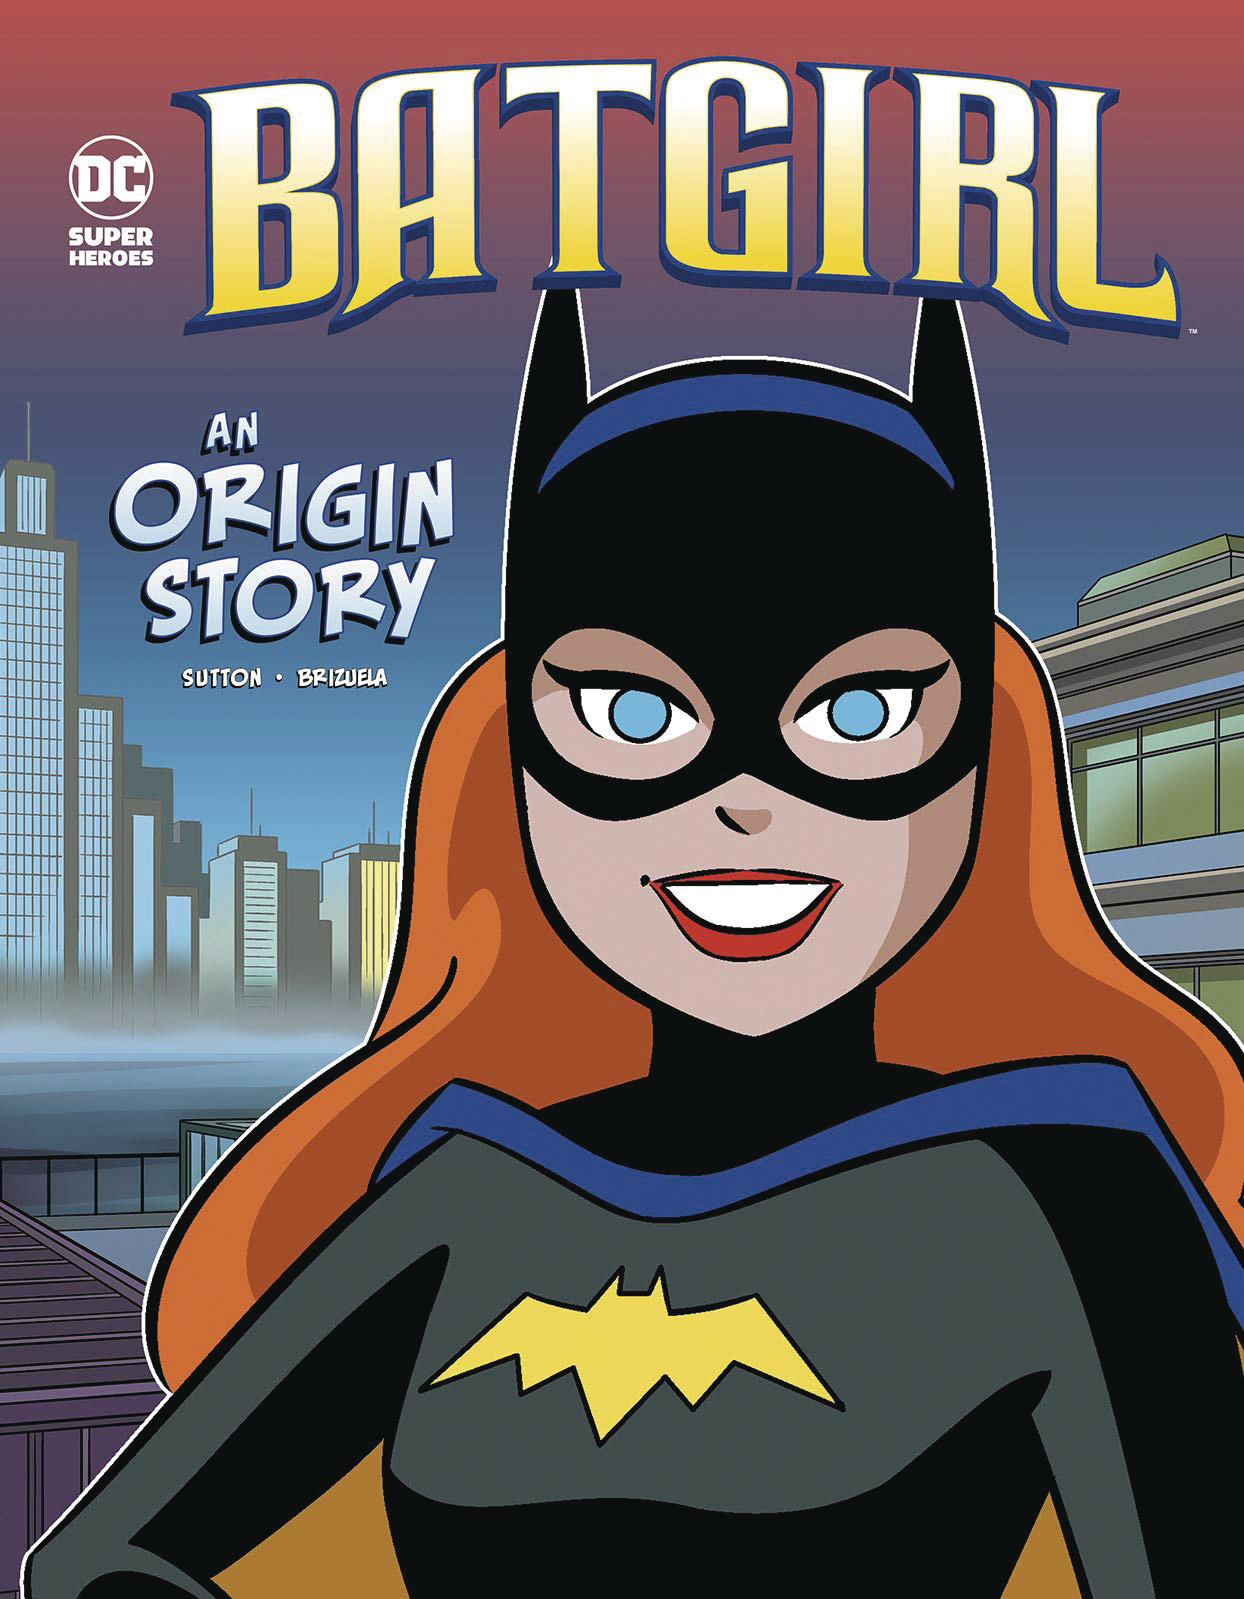 DC Super Heroes Origins Young Reader Graphic Novel #5 Batgirl